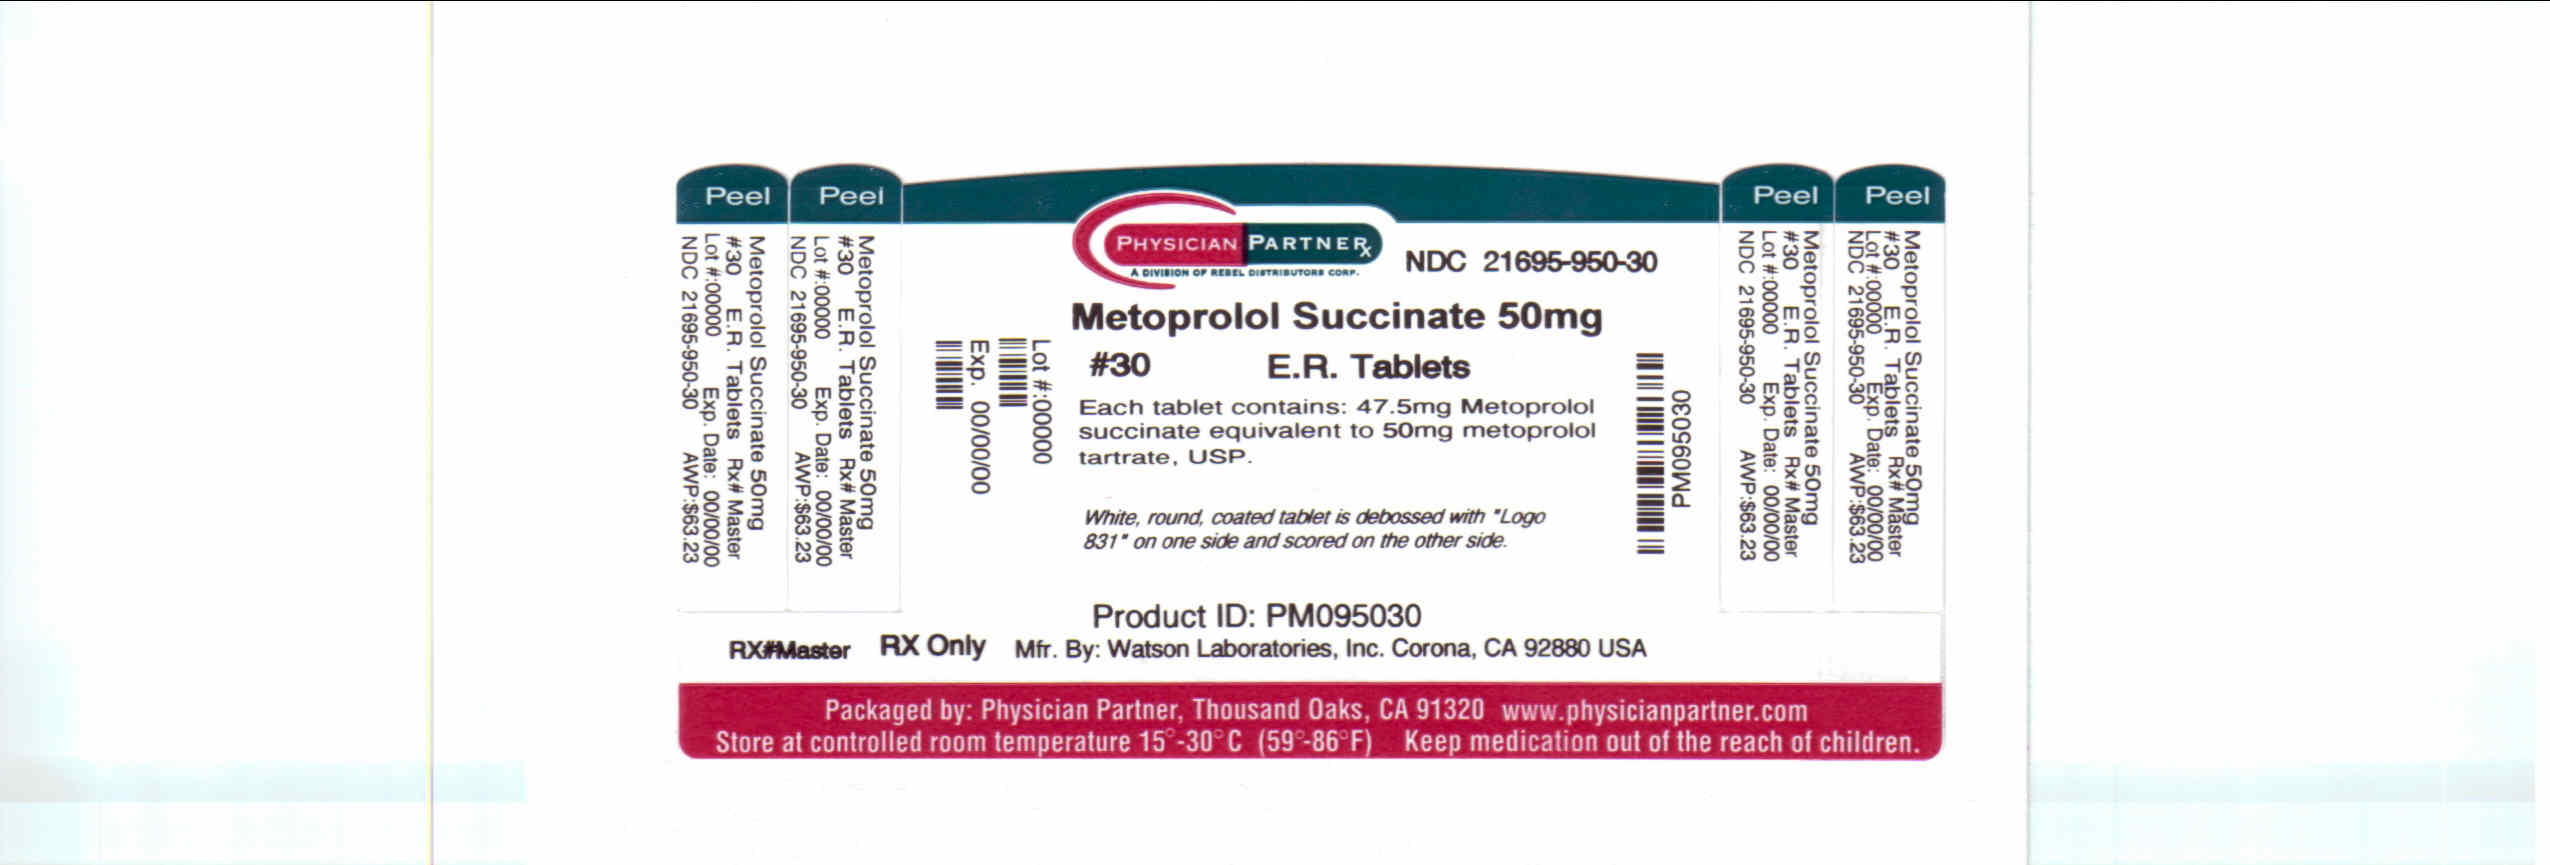 Metoprolol Succinate 50mg